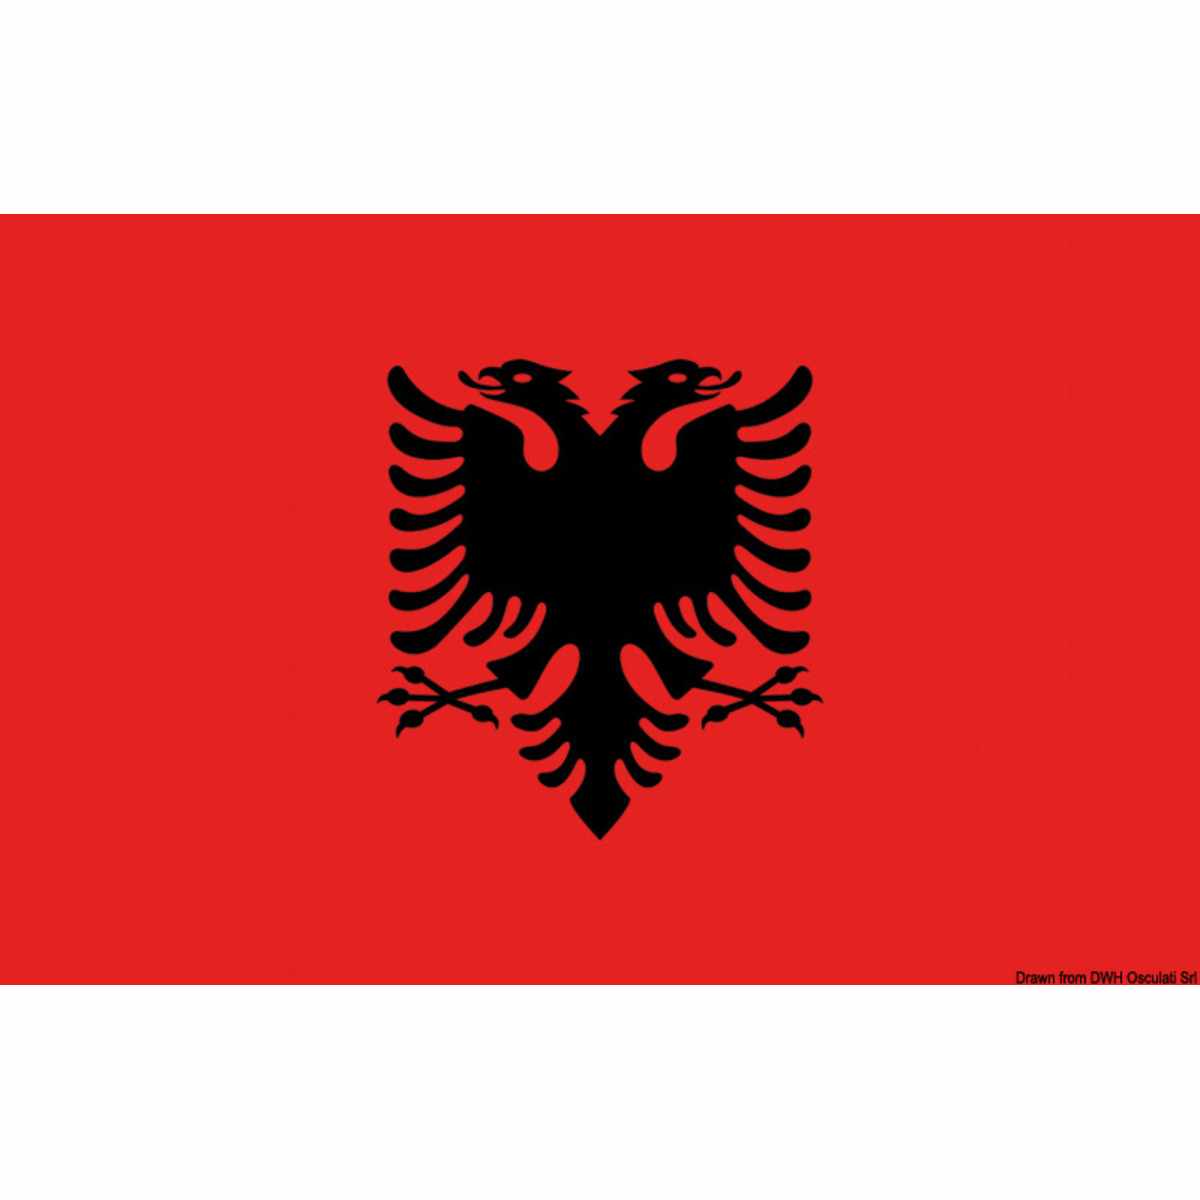 Flagge - Albanien